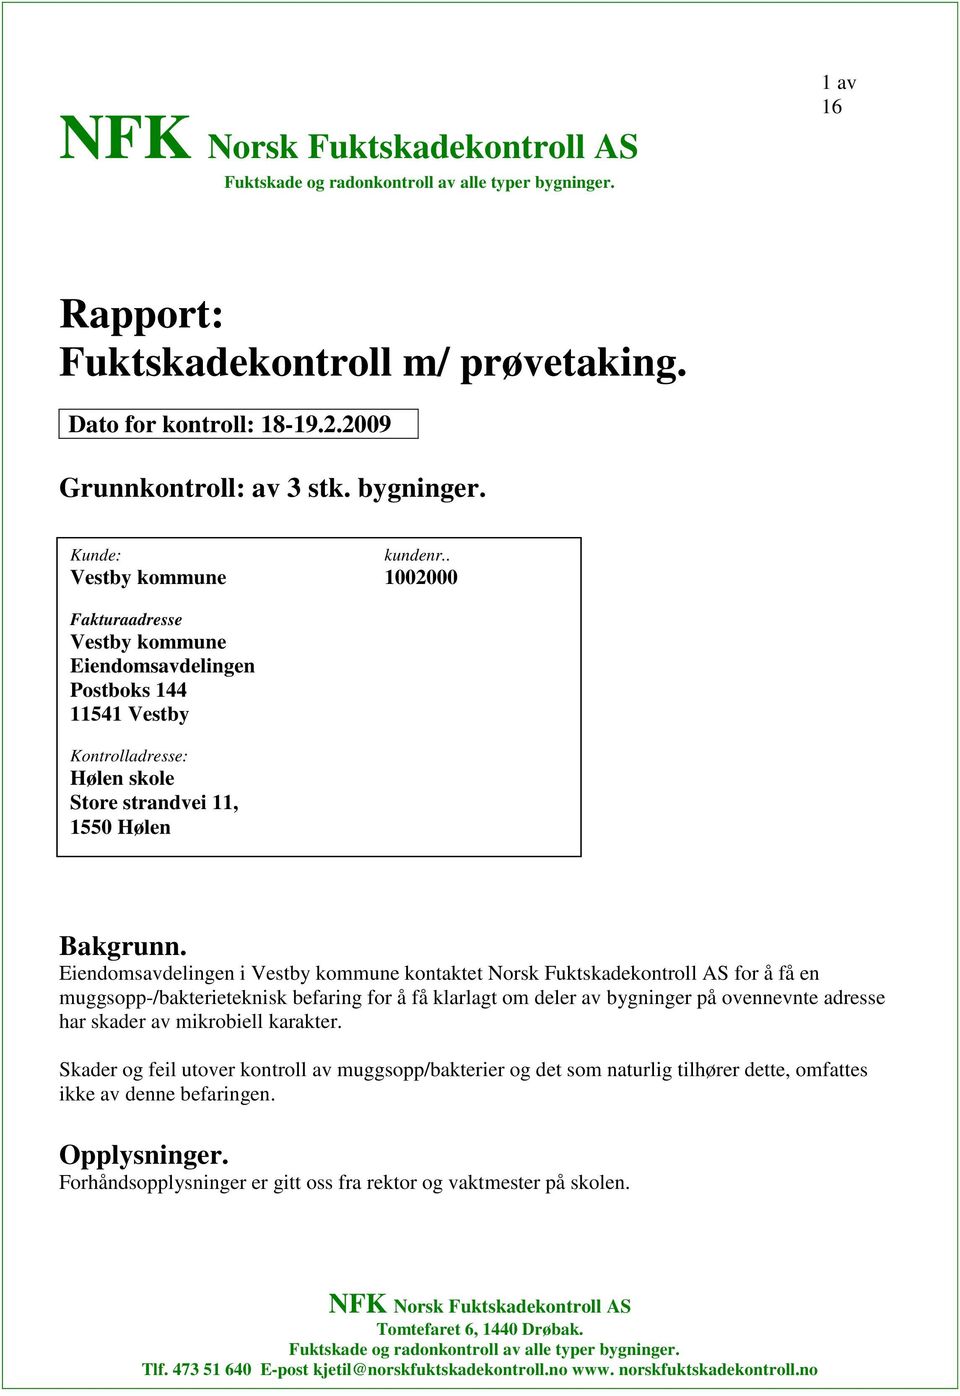 Eiendomsavdelingen i Vestby kommune kontaktet Norsk Fuktskadekontroll AS for å få en muggsopp-/bakterieteknisk befaring for å få klarlagt om deler av bygninger på ovennevnte